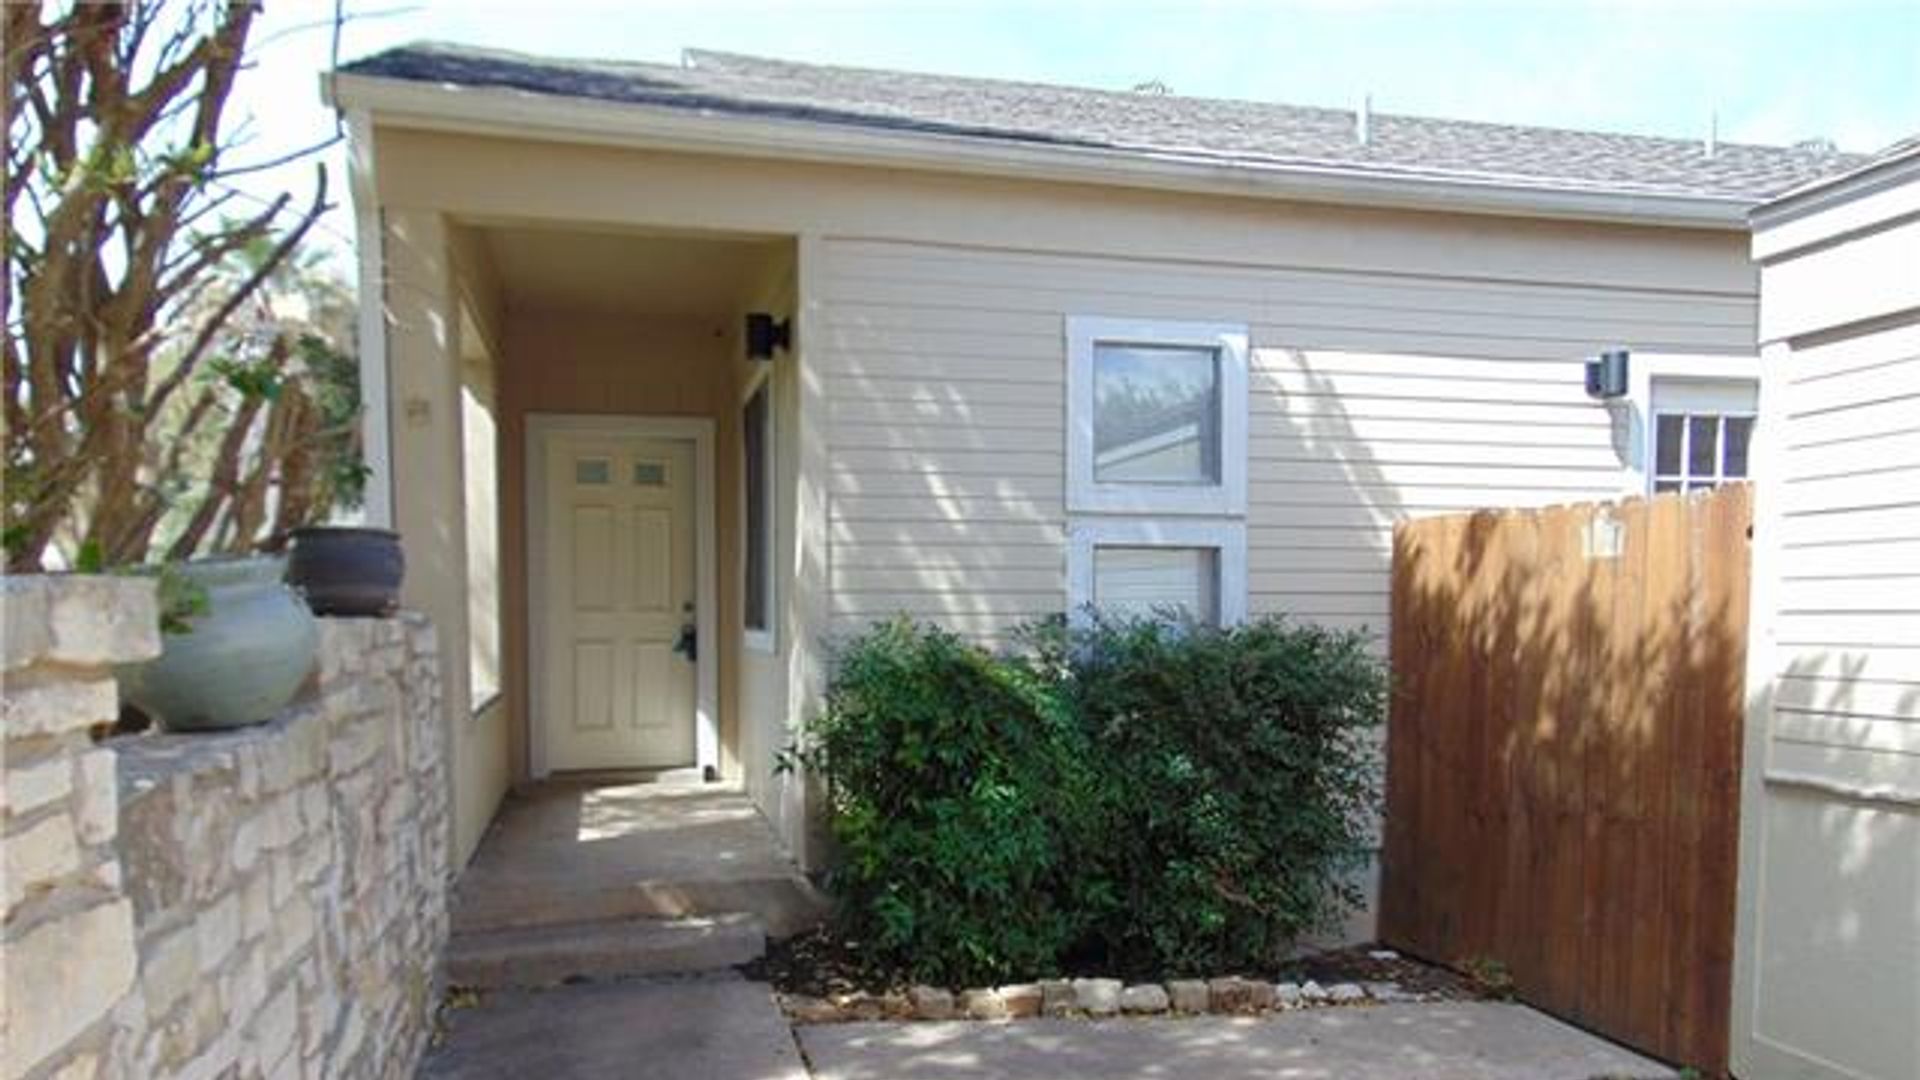 3 bedroom duplex at 235 Mooring Circle, Lakeway, TX 78734